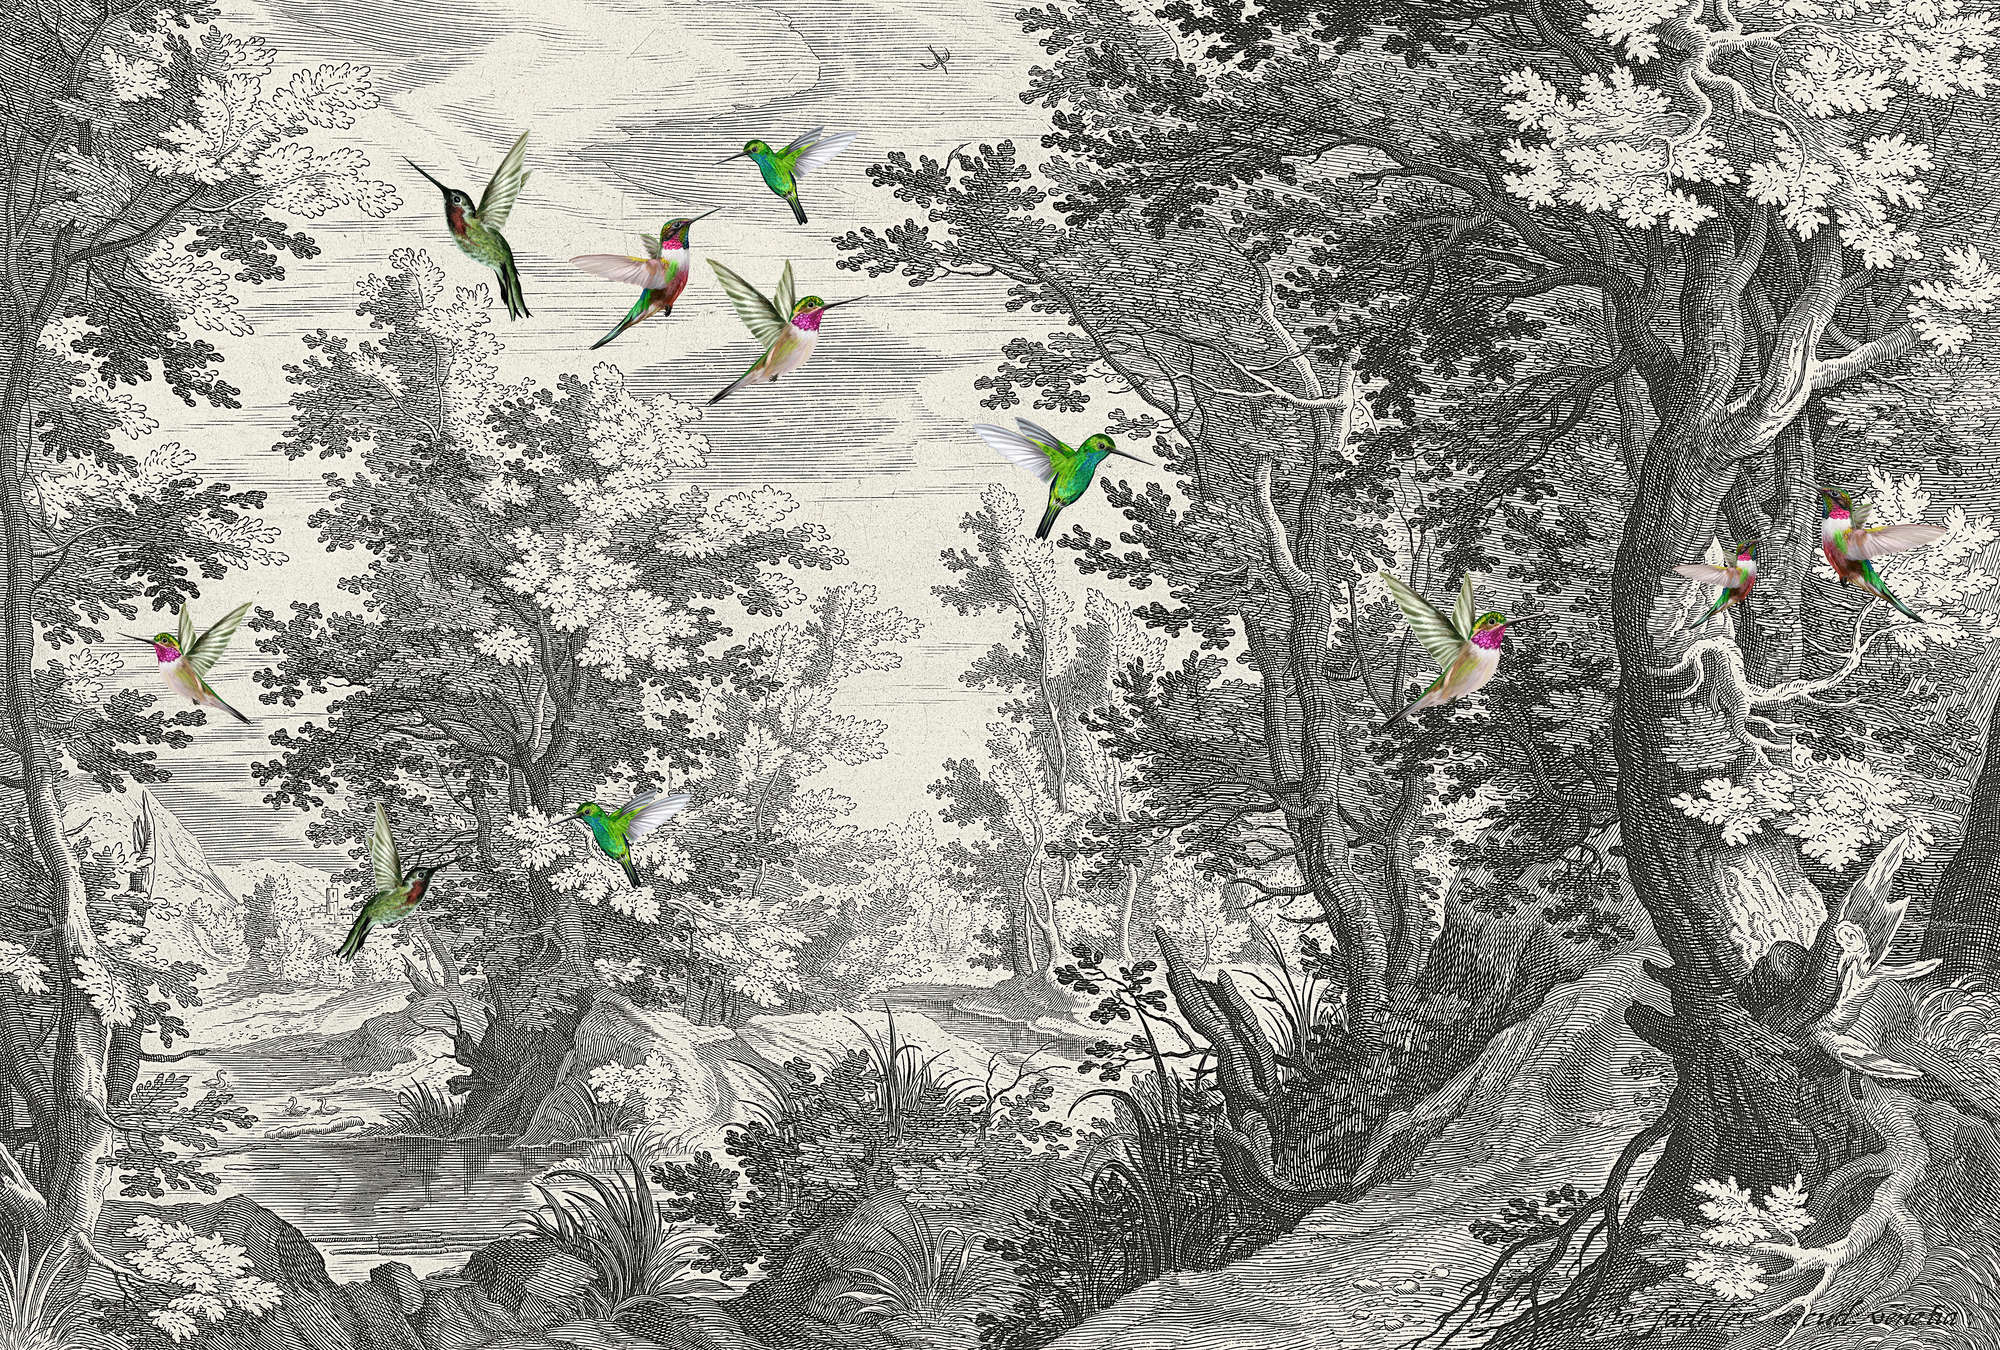             Fancy Forest 1 - Stampa murale di paesaggio con uccelli
        